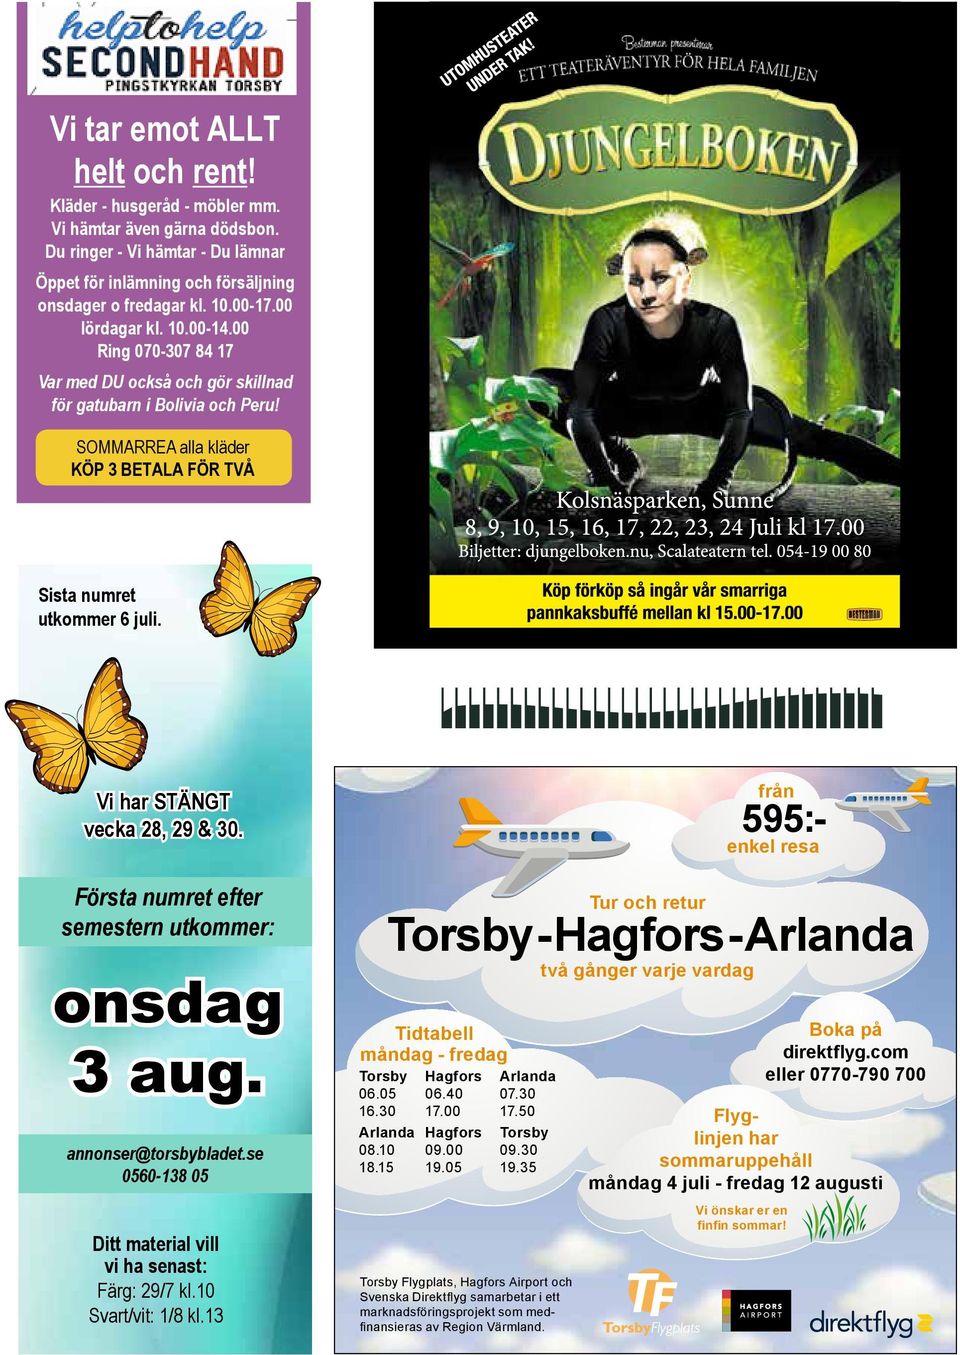 Vi har STÄNGT vecka 28, 29 & 30. Första numret efter semestern utkommer: onsdag 3 aug. annonser@torsbybladet.se 0560-138 05 Ditt material vill vi ha senast: Färg: 29/7 kl.10 Svart/vit: 1/8 kl.